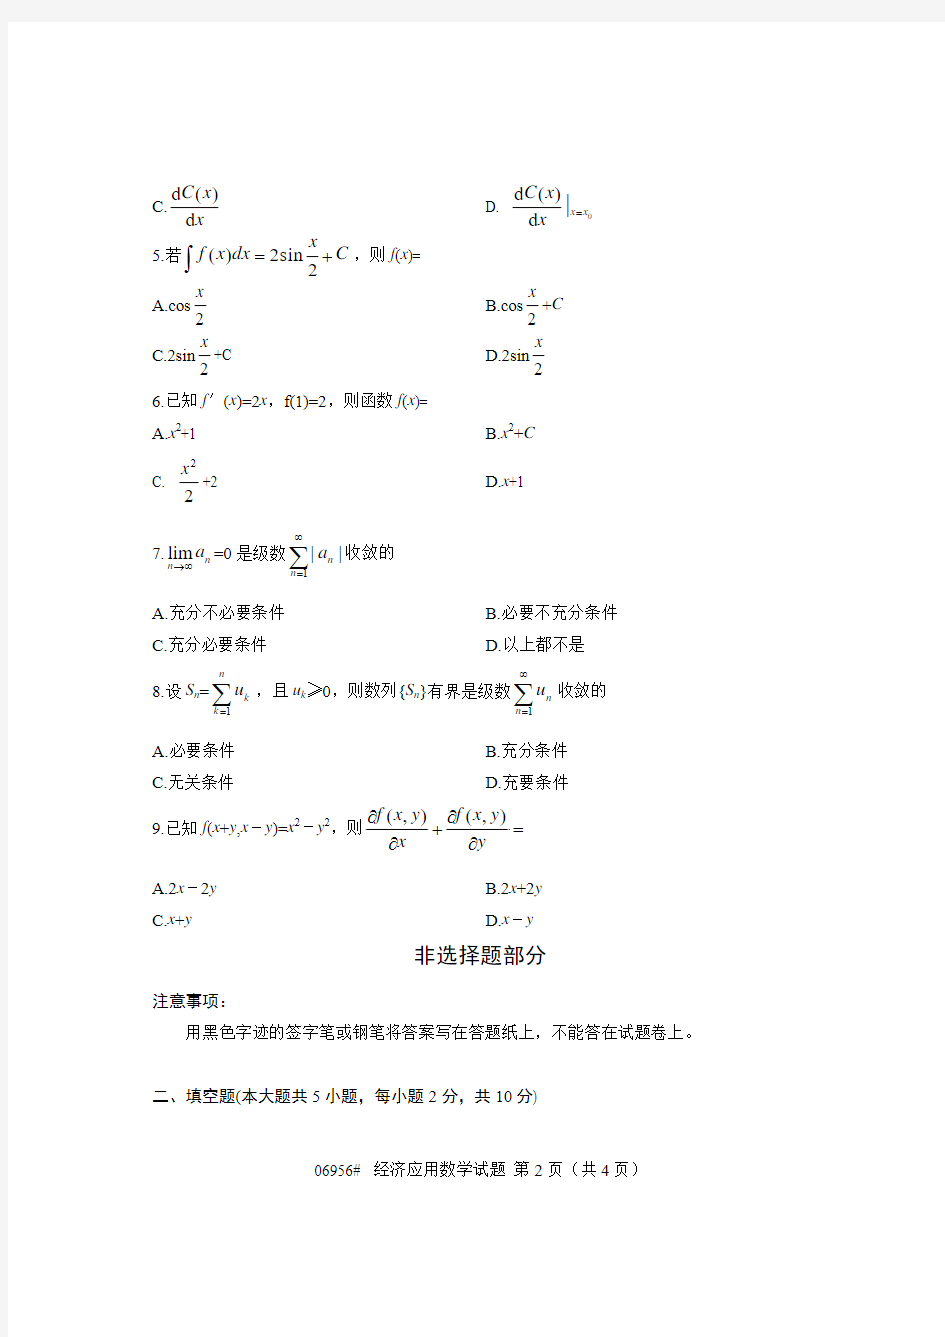 浙江省2012年10月高等教育自学考试 经济应用数学试题 课程代码06956